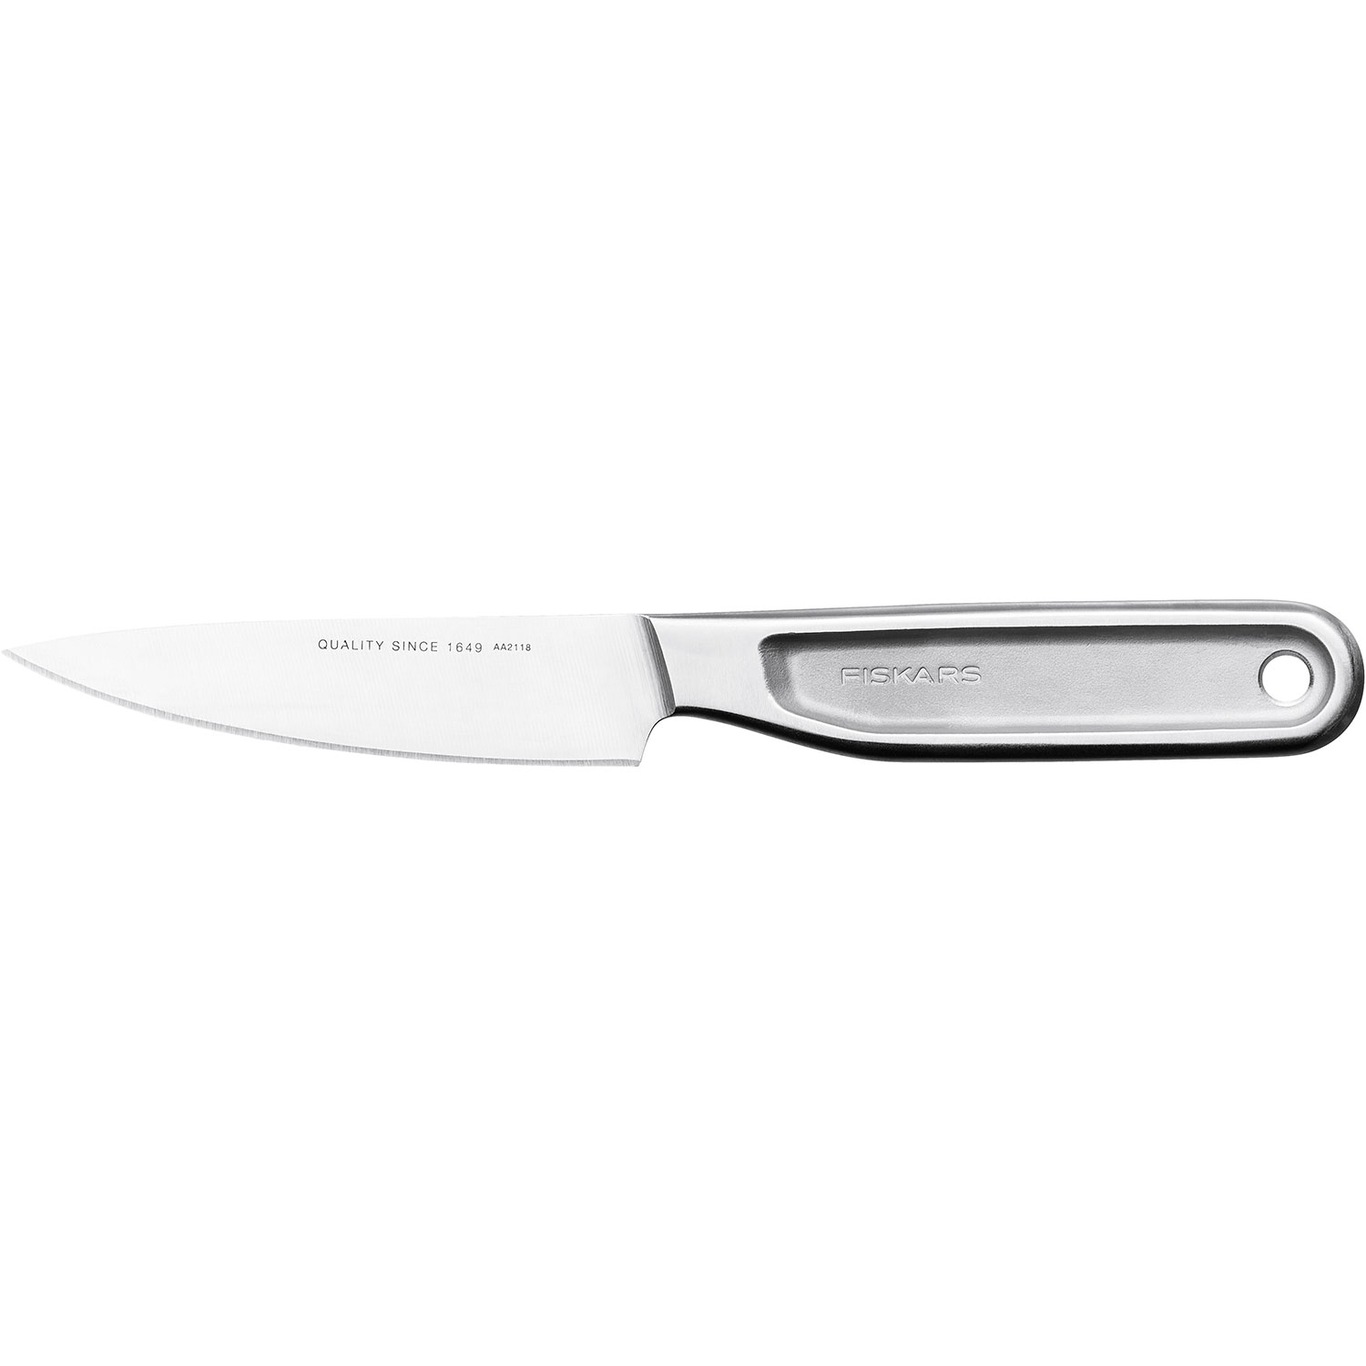 All Steel Vegetable Knife, 10 cm